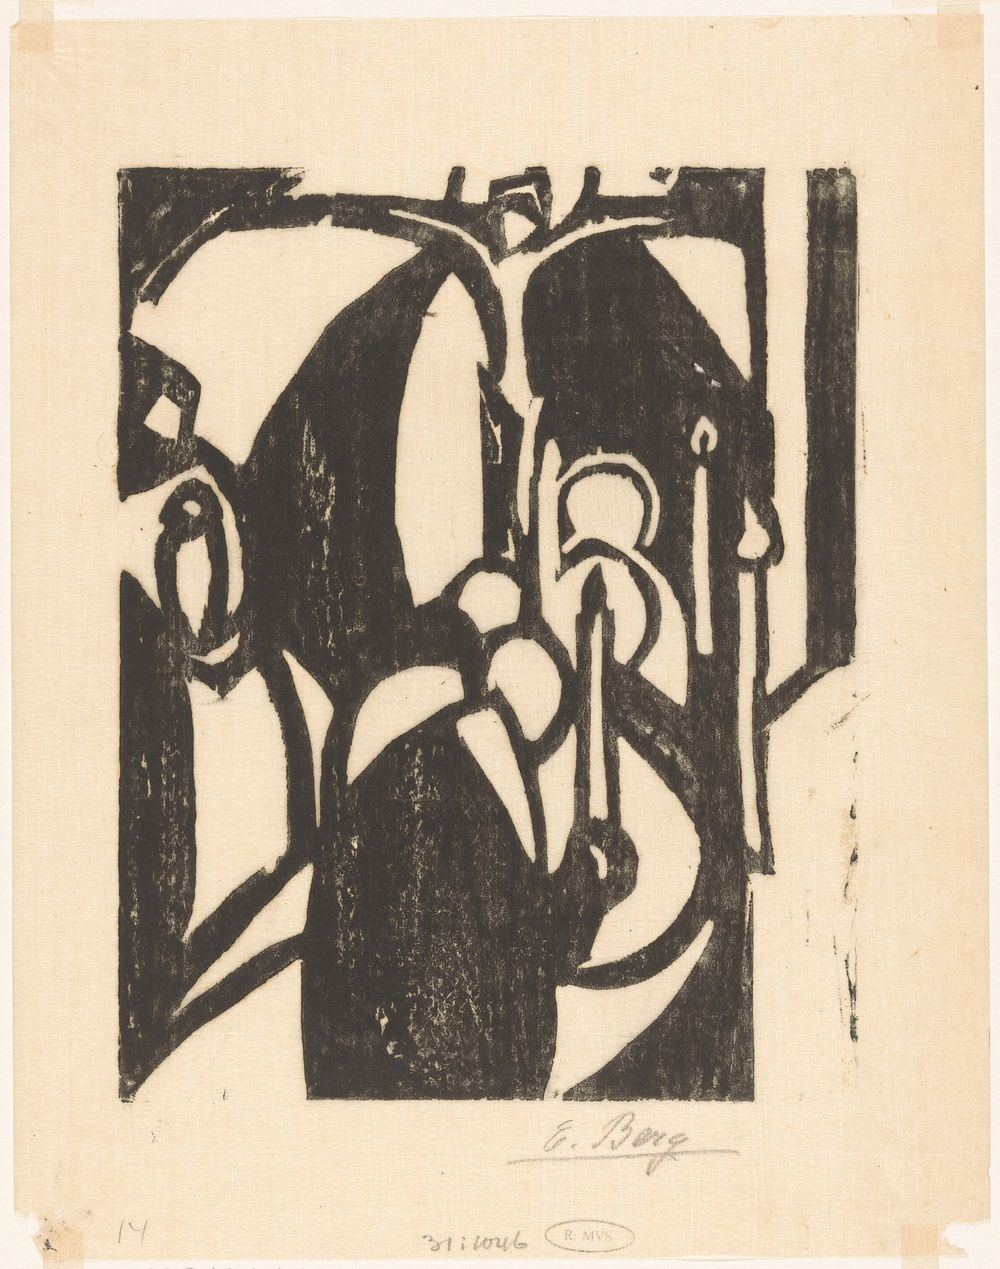 Processie (c. 1915 - in or before 1919) by Else Berg